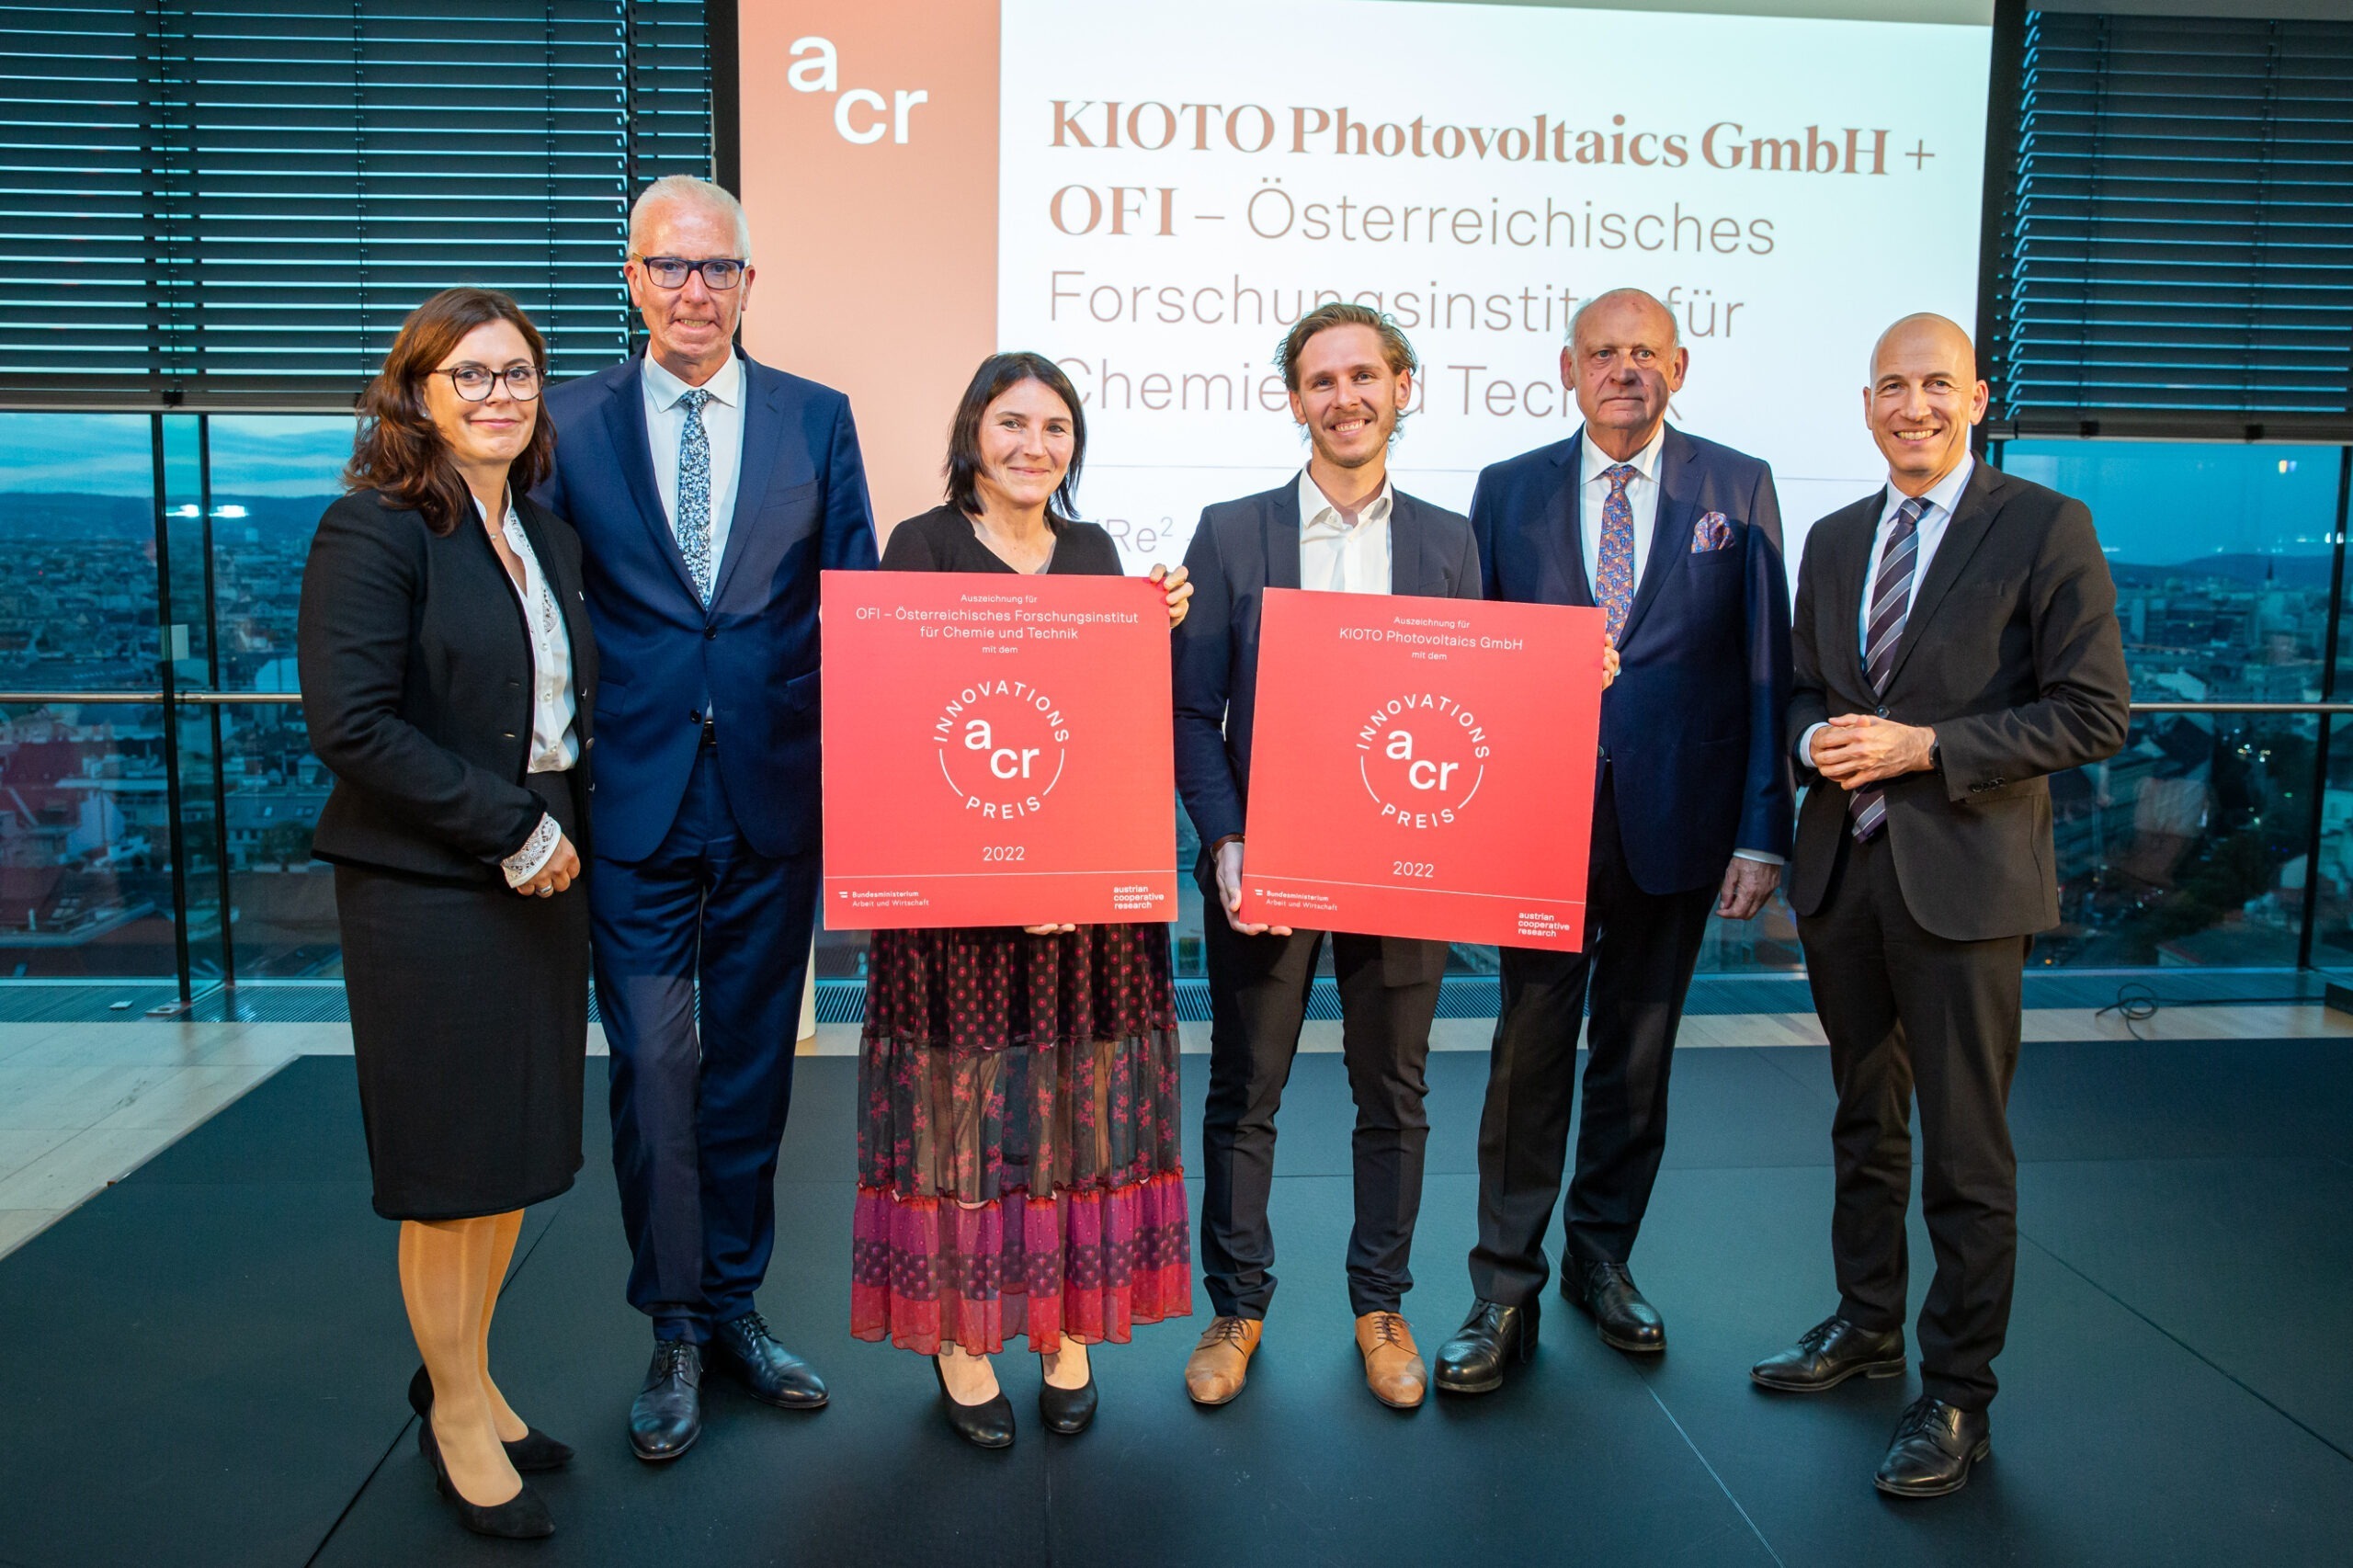 ACR Innovationspreis OFI KIOTO